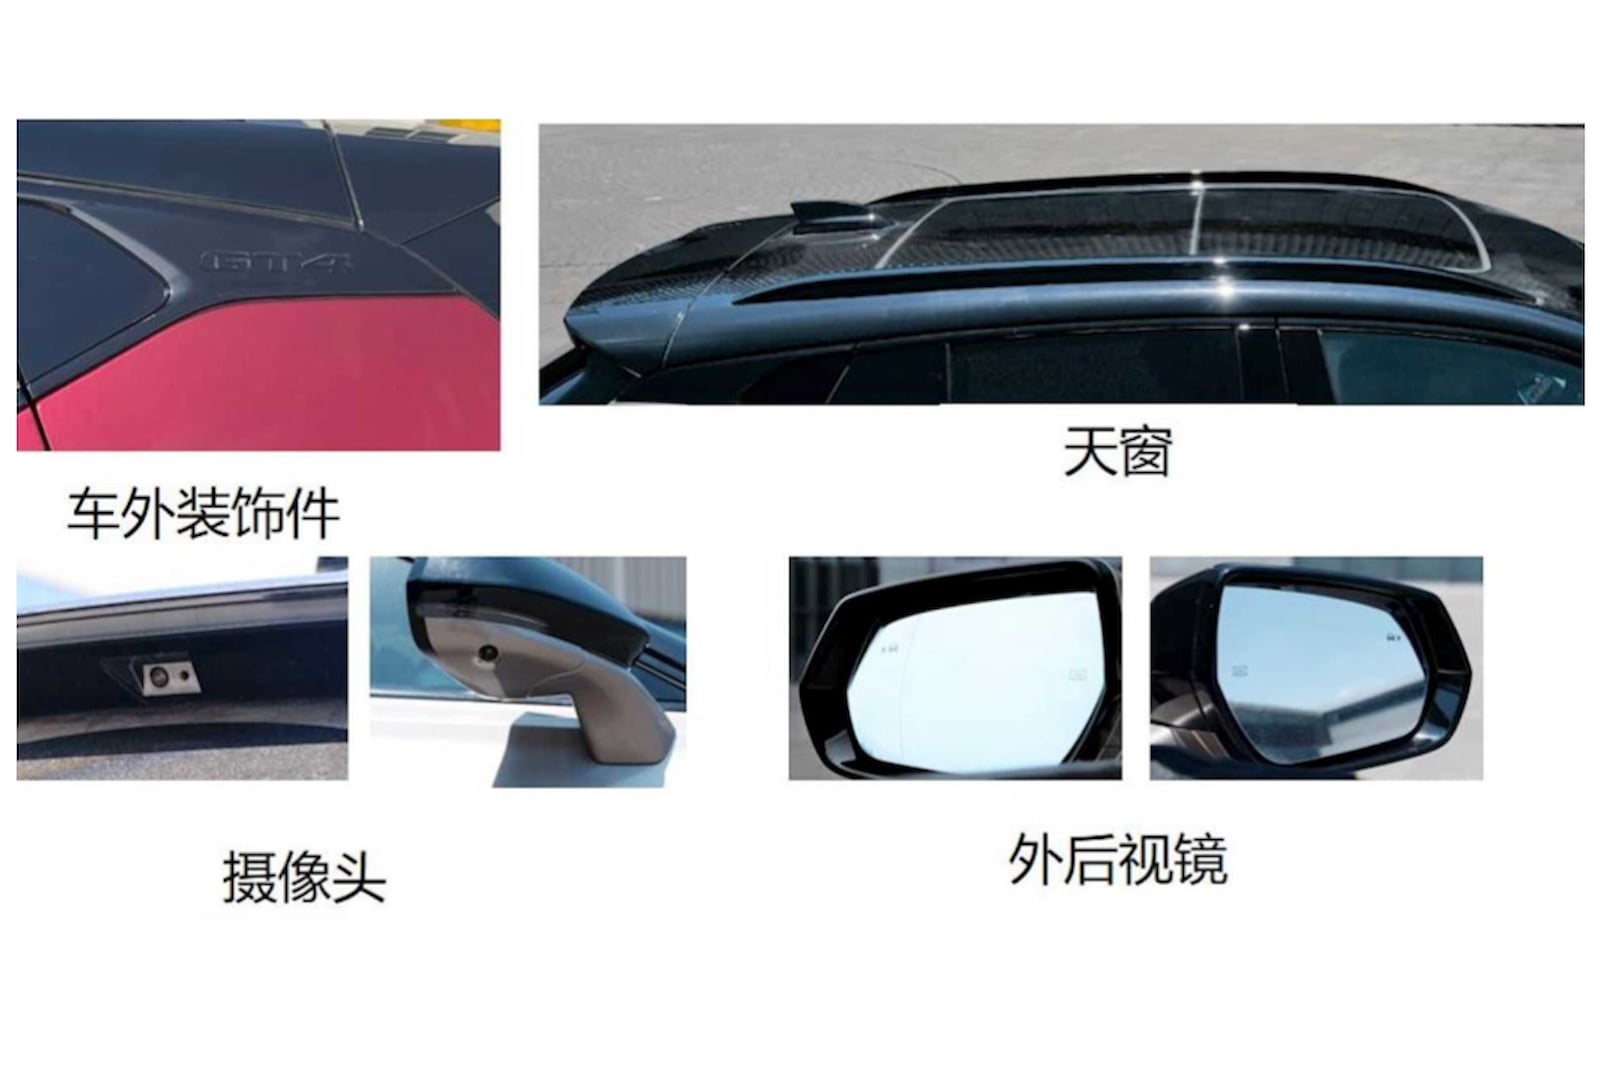 Как сообщает Car News China, будут предложены две модели. Переднеприводный 25T Luxury оснащен 1,5-литровым силовым агрегатом мощностью 201 лошадиная сила. Те, кто ищет больше мощности, выберут 28T Sport с 2,0-литровым двигателем. Этот вариант имеет м